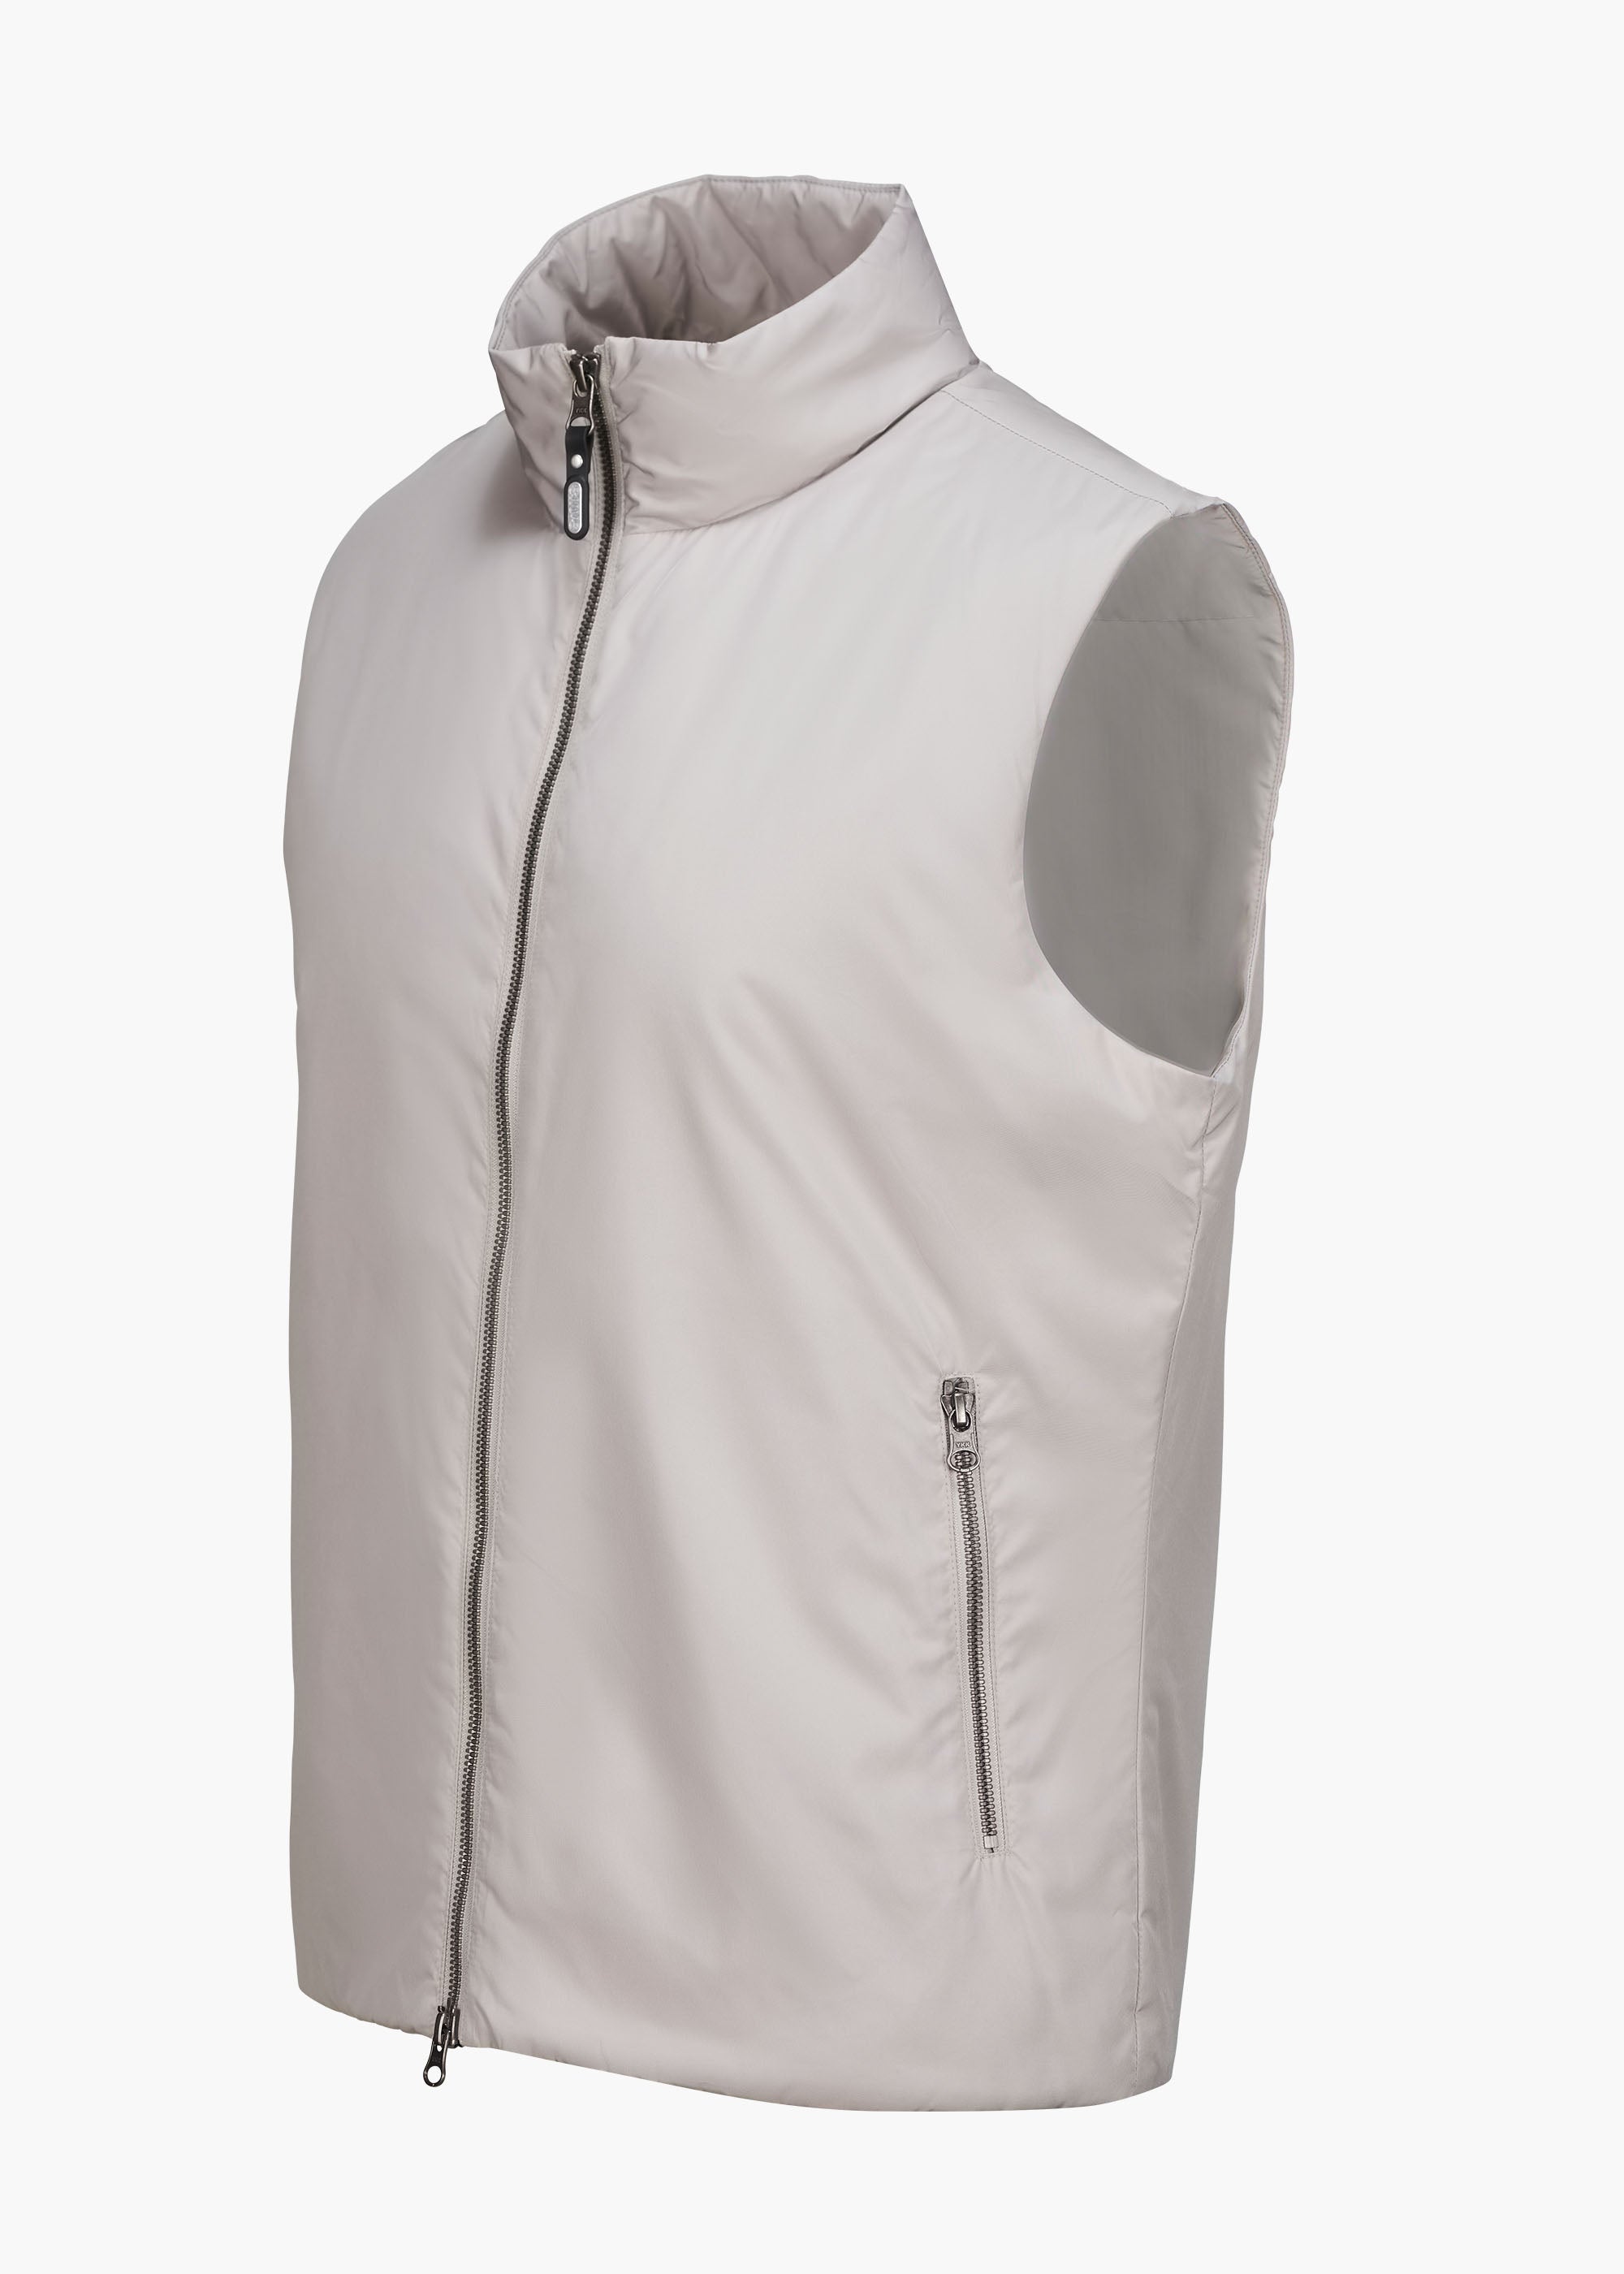 The Light Vest - background::white,variant::BEIGE